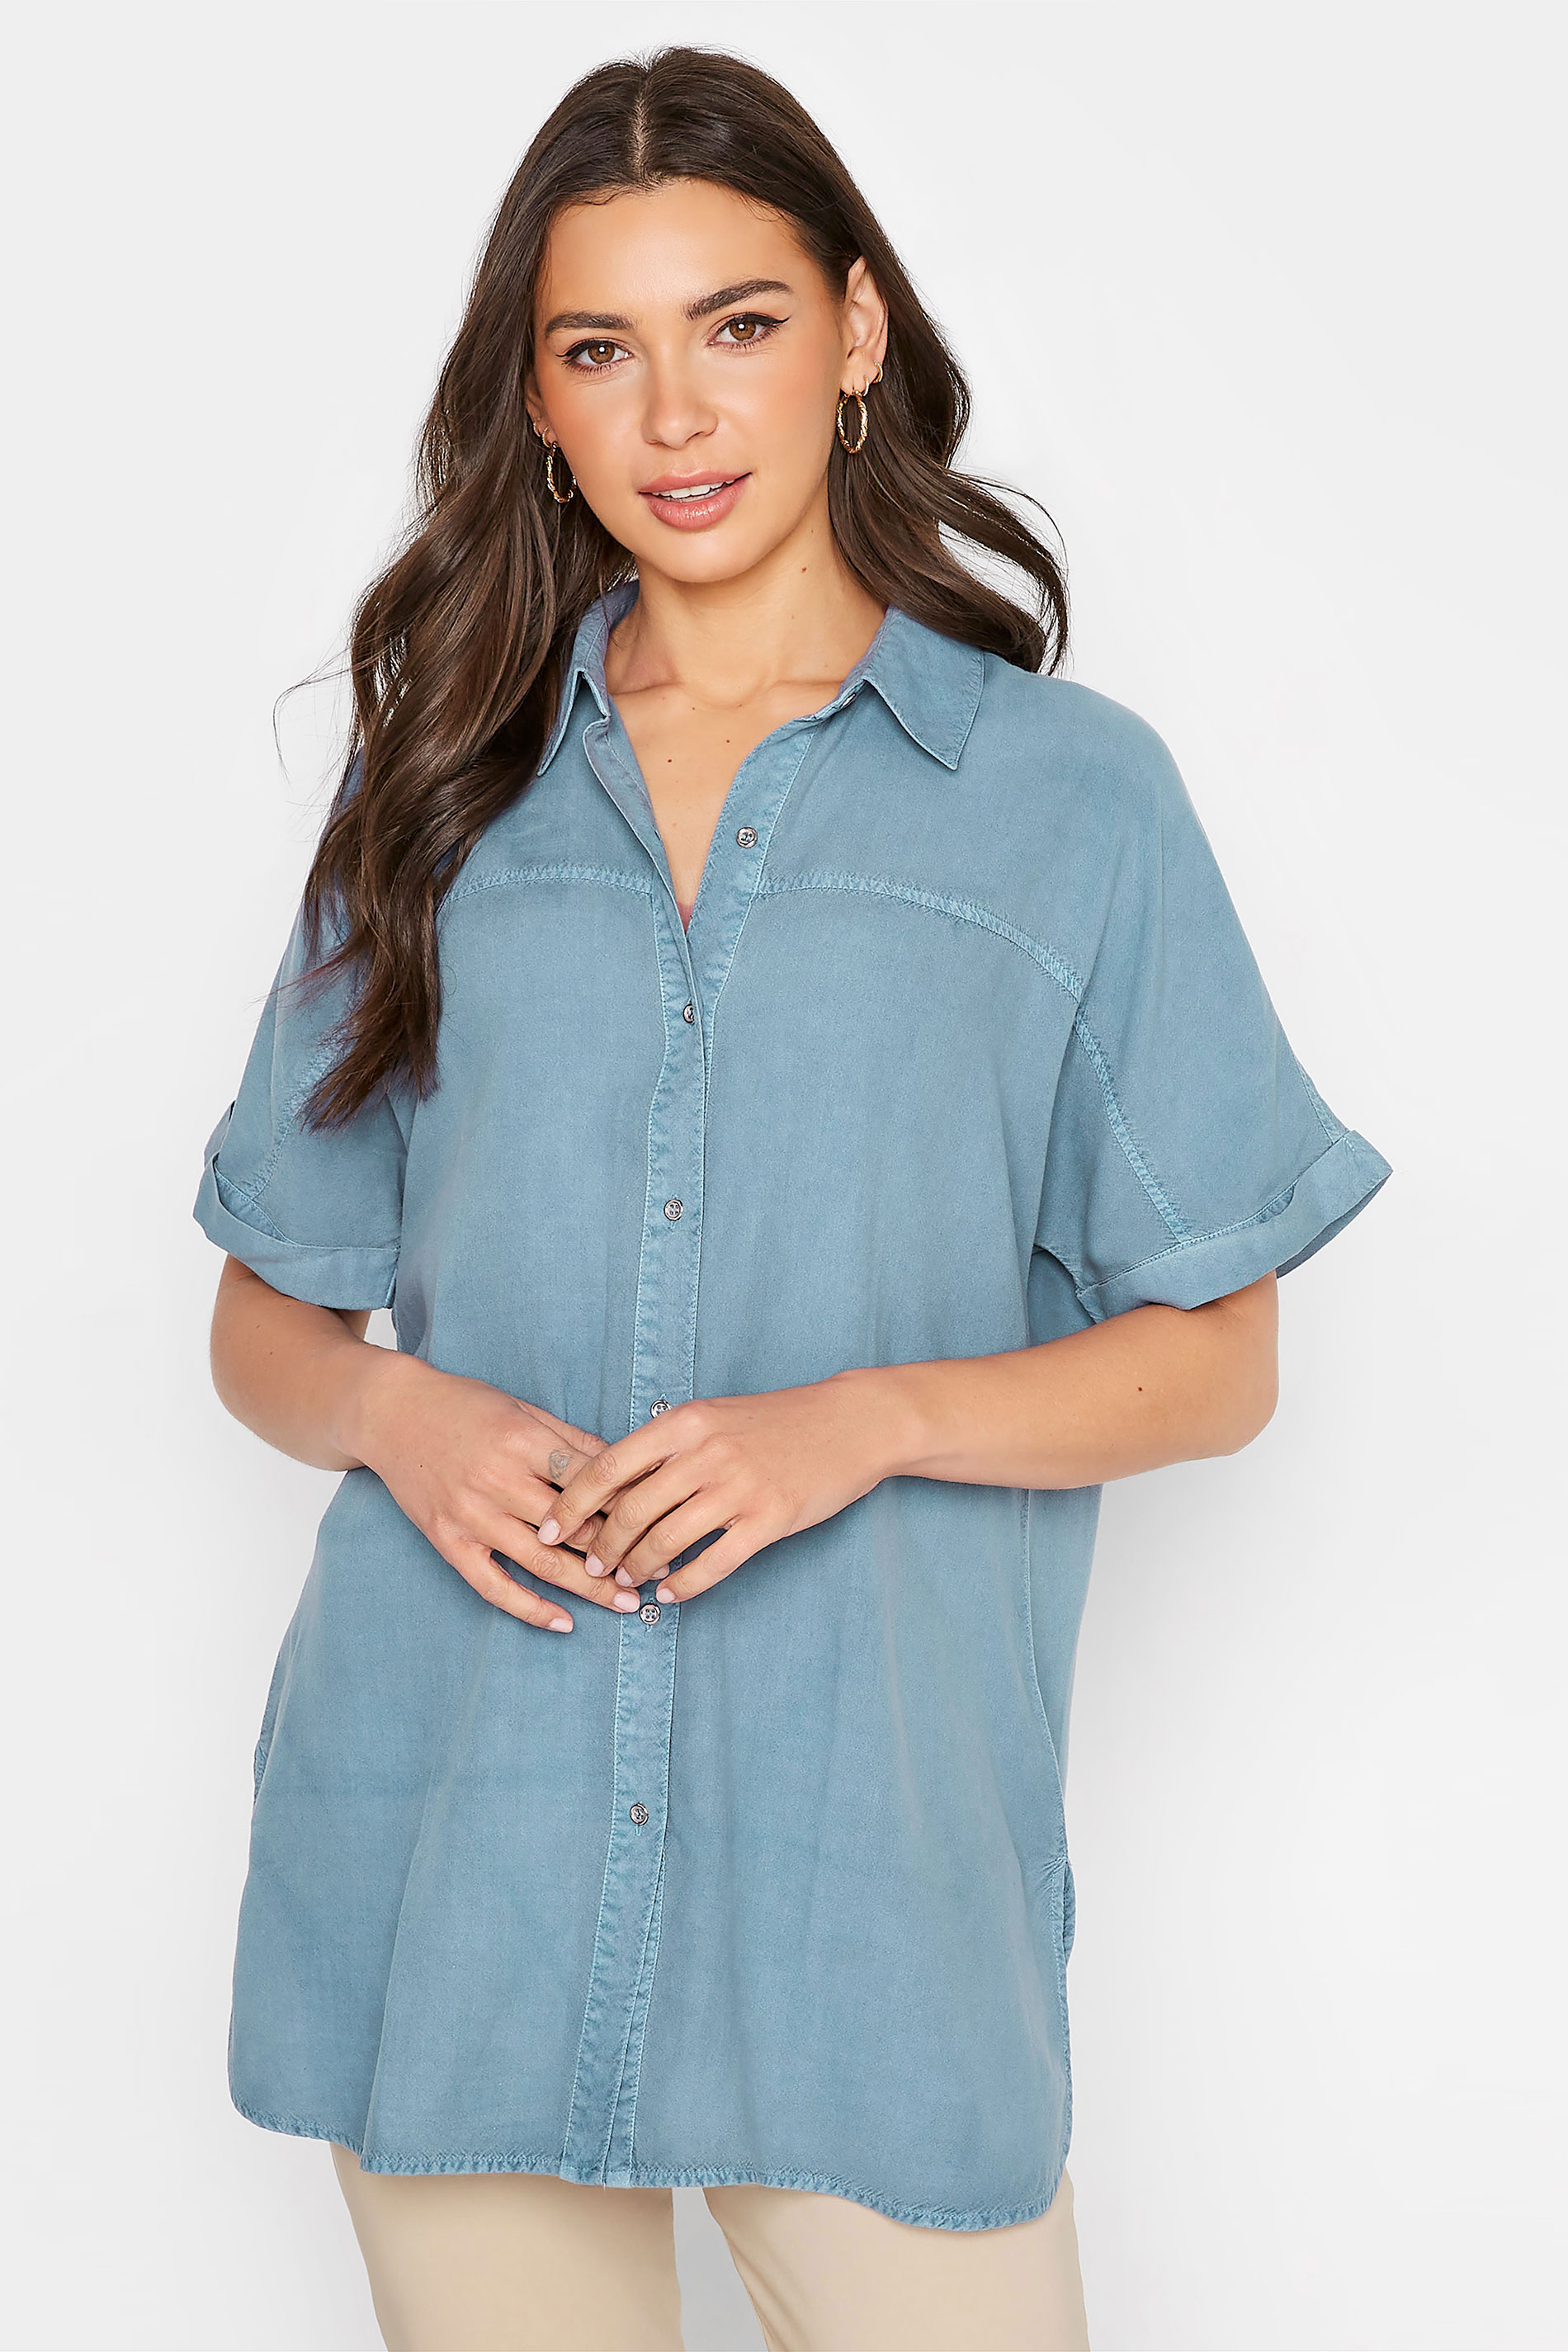 LTS Tall Women's Blue Short Sleeve Denim Shirt | Long Tall Sally 1